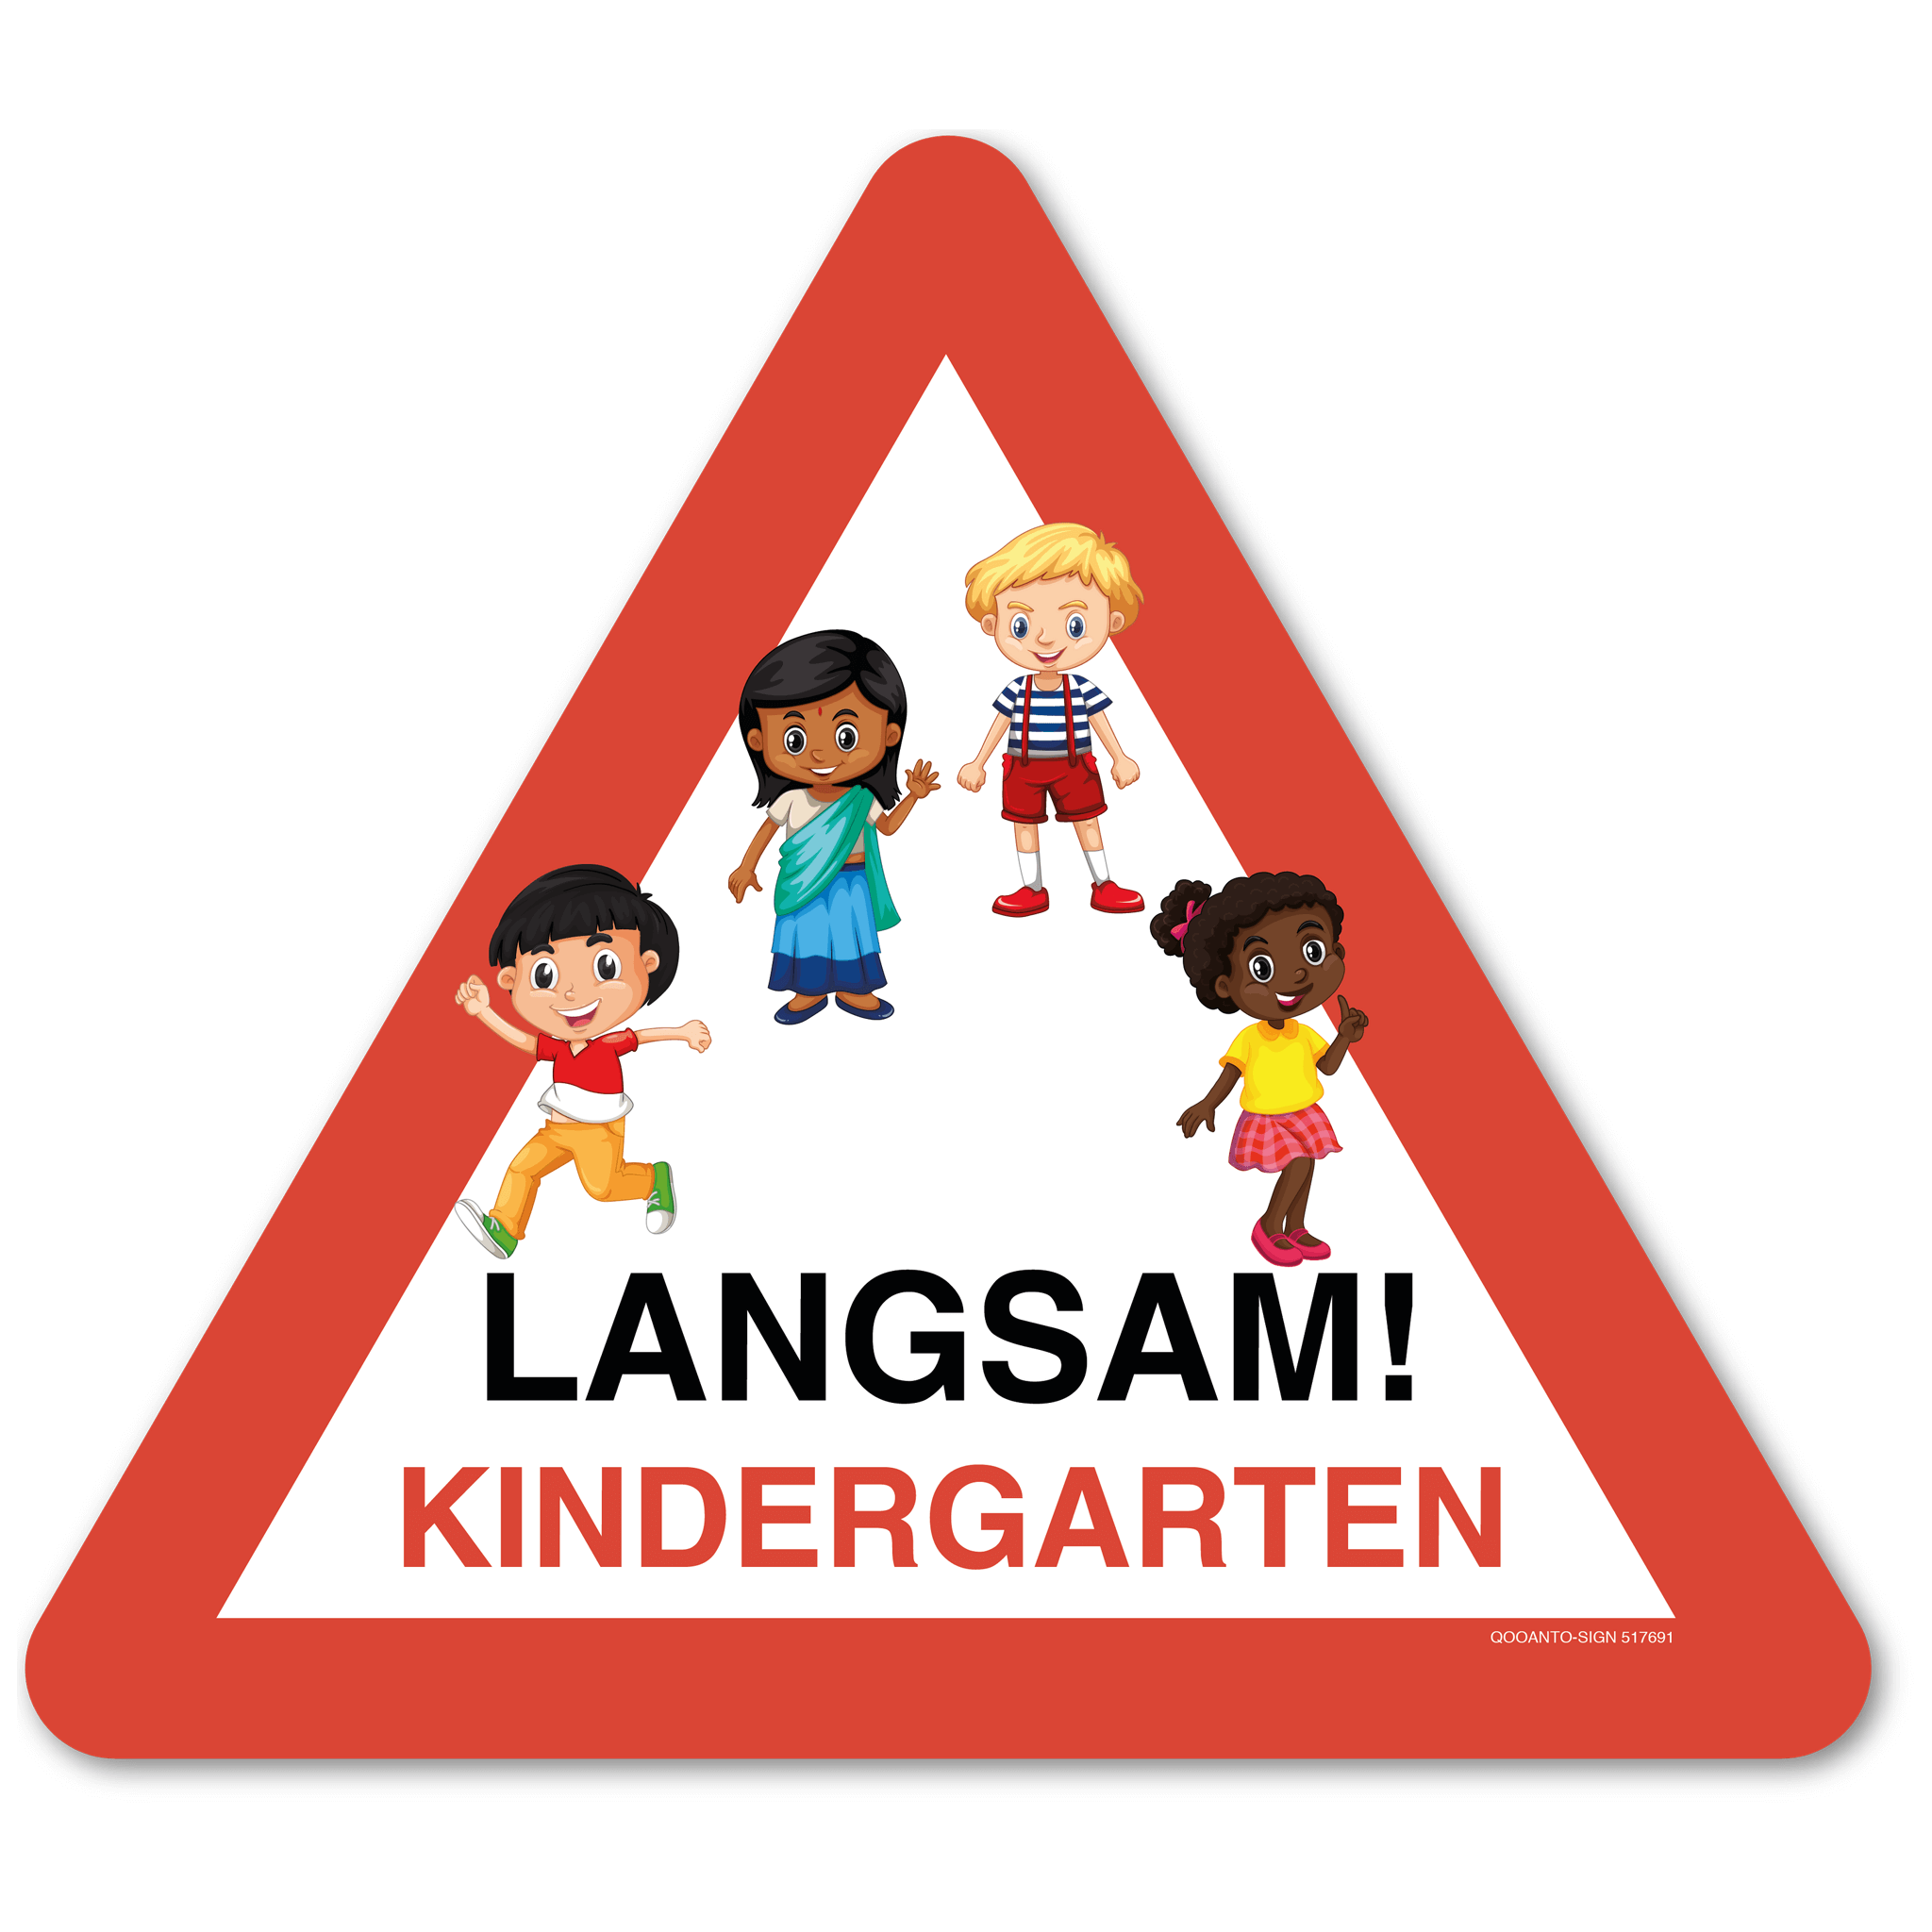 Warndreieck LANGSAM! Kindergarten Mit Kinder, Schild oder Aufkleber